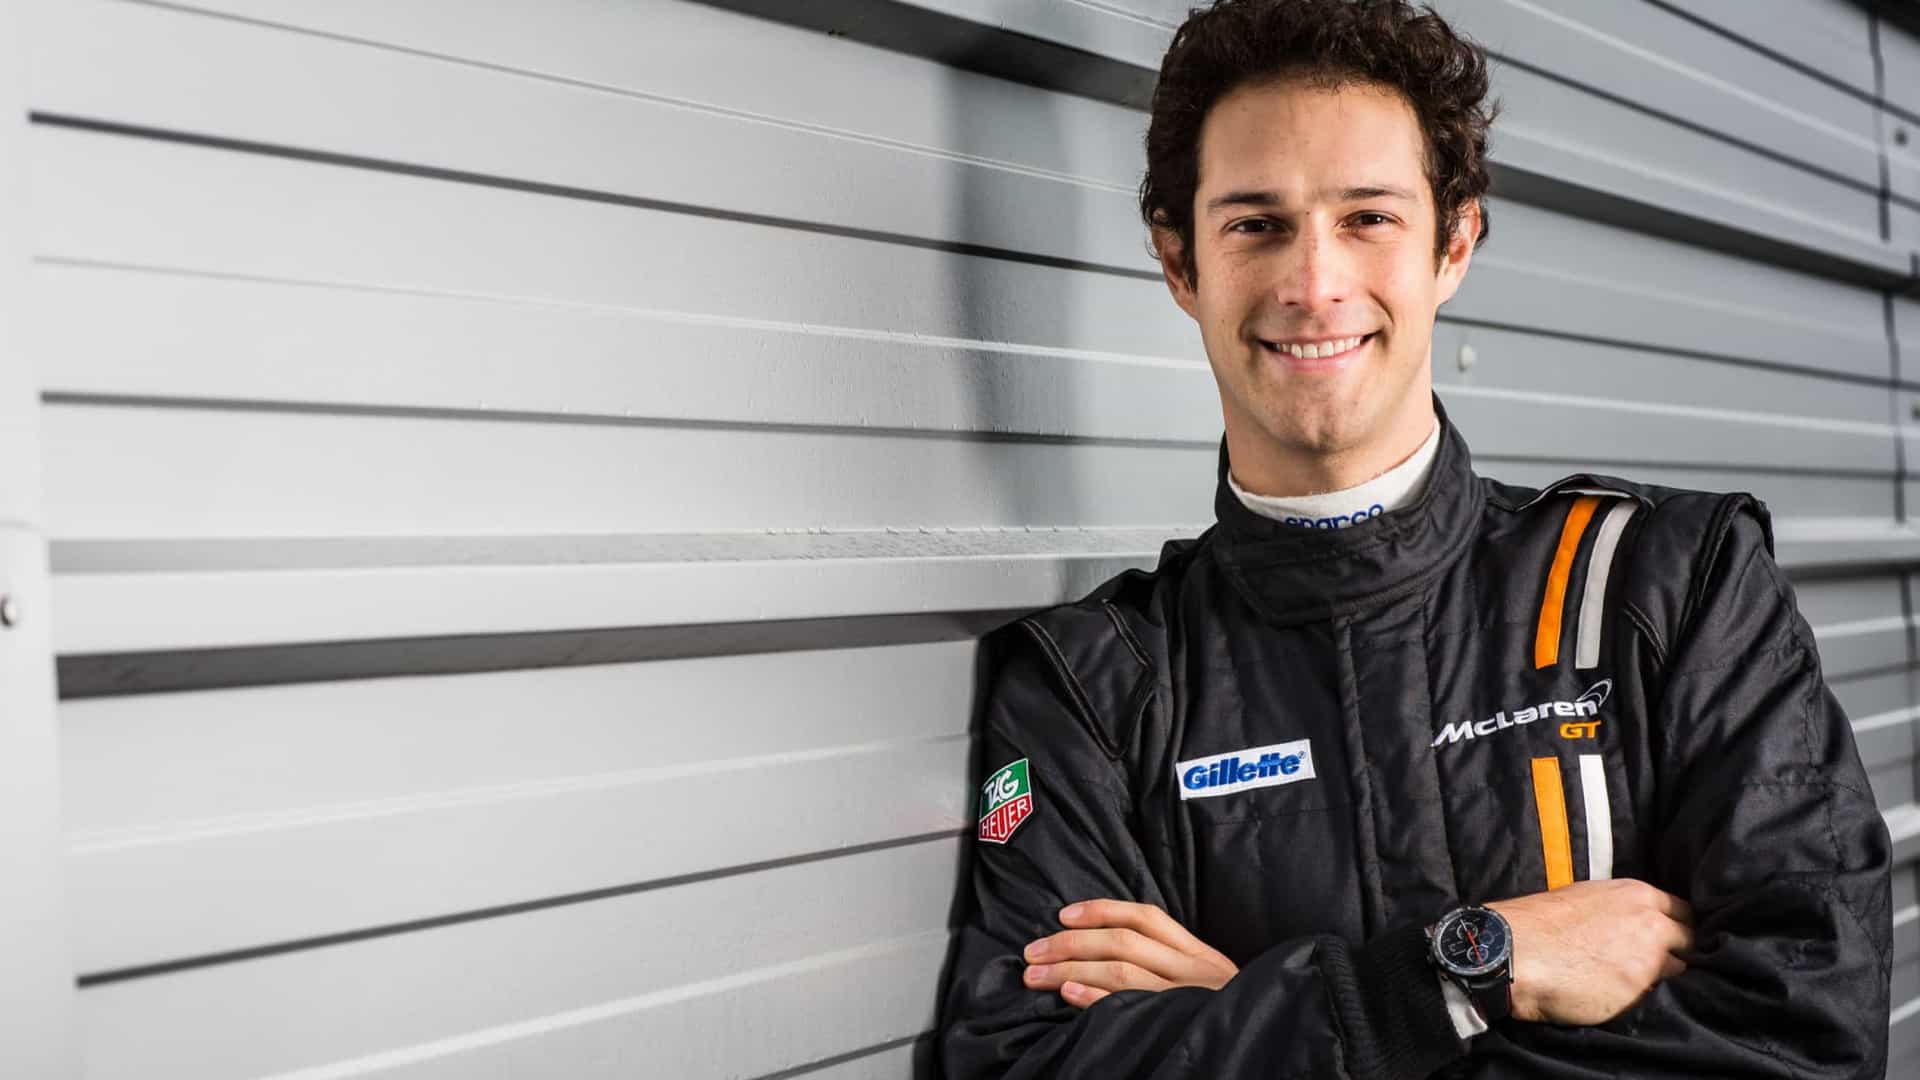 Sobrinho de Senna pilotará McLaren do tricampeão antes do GP do Brasil